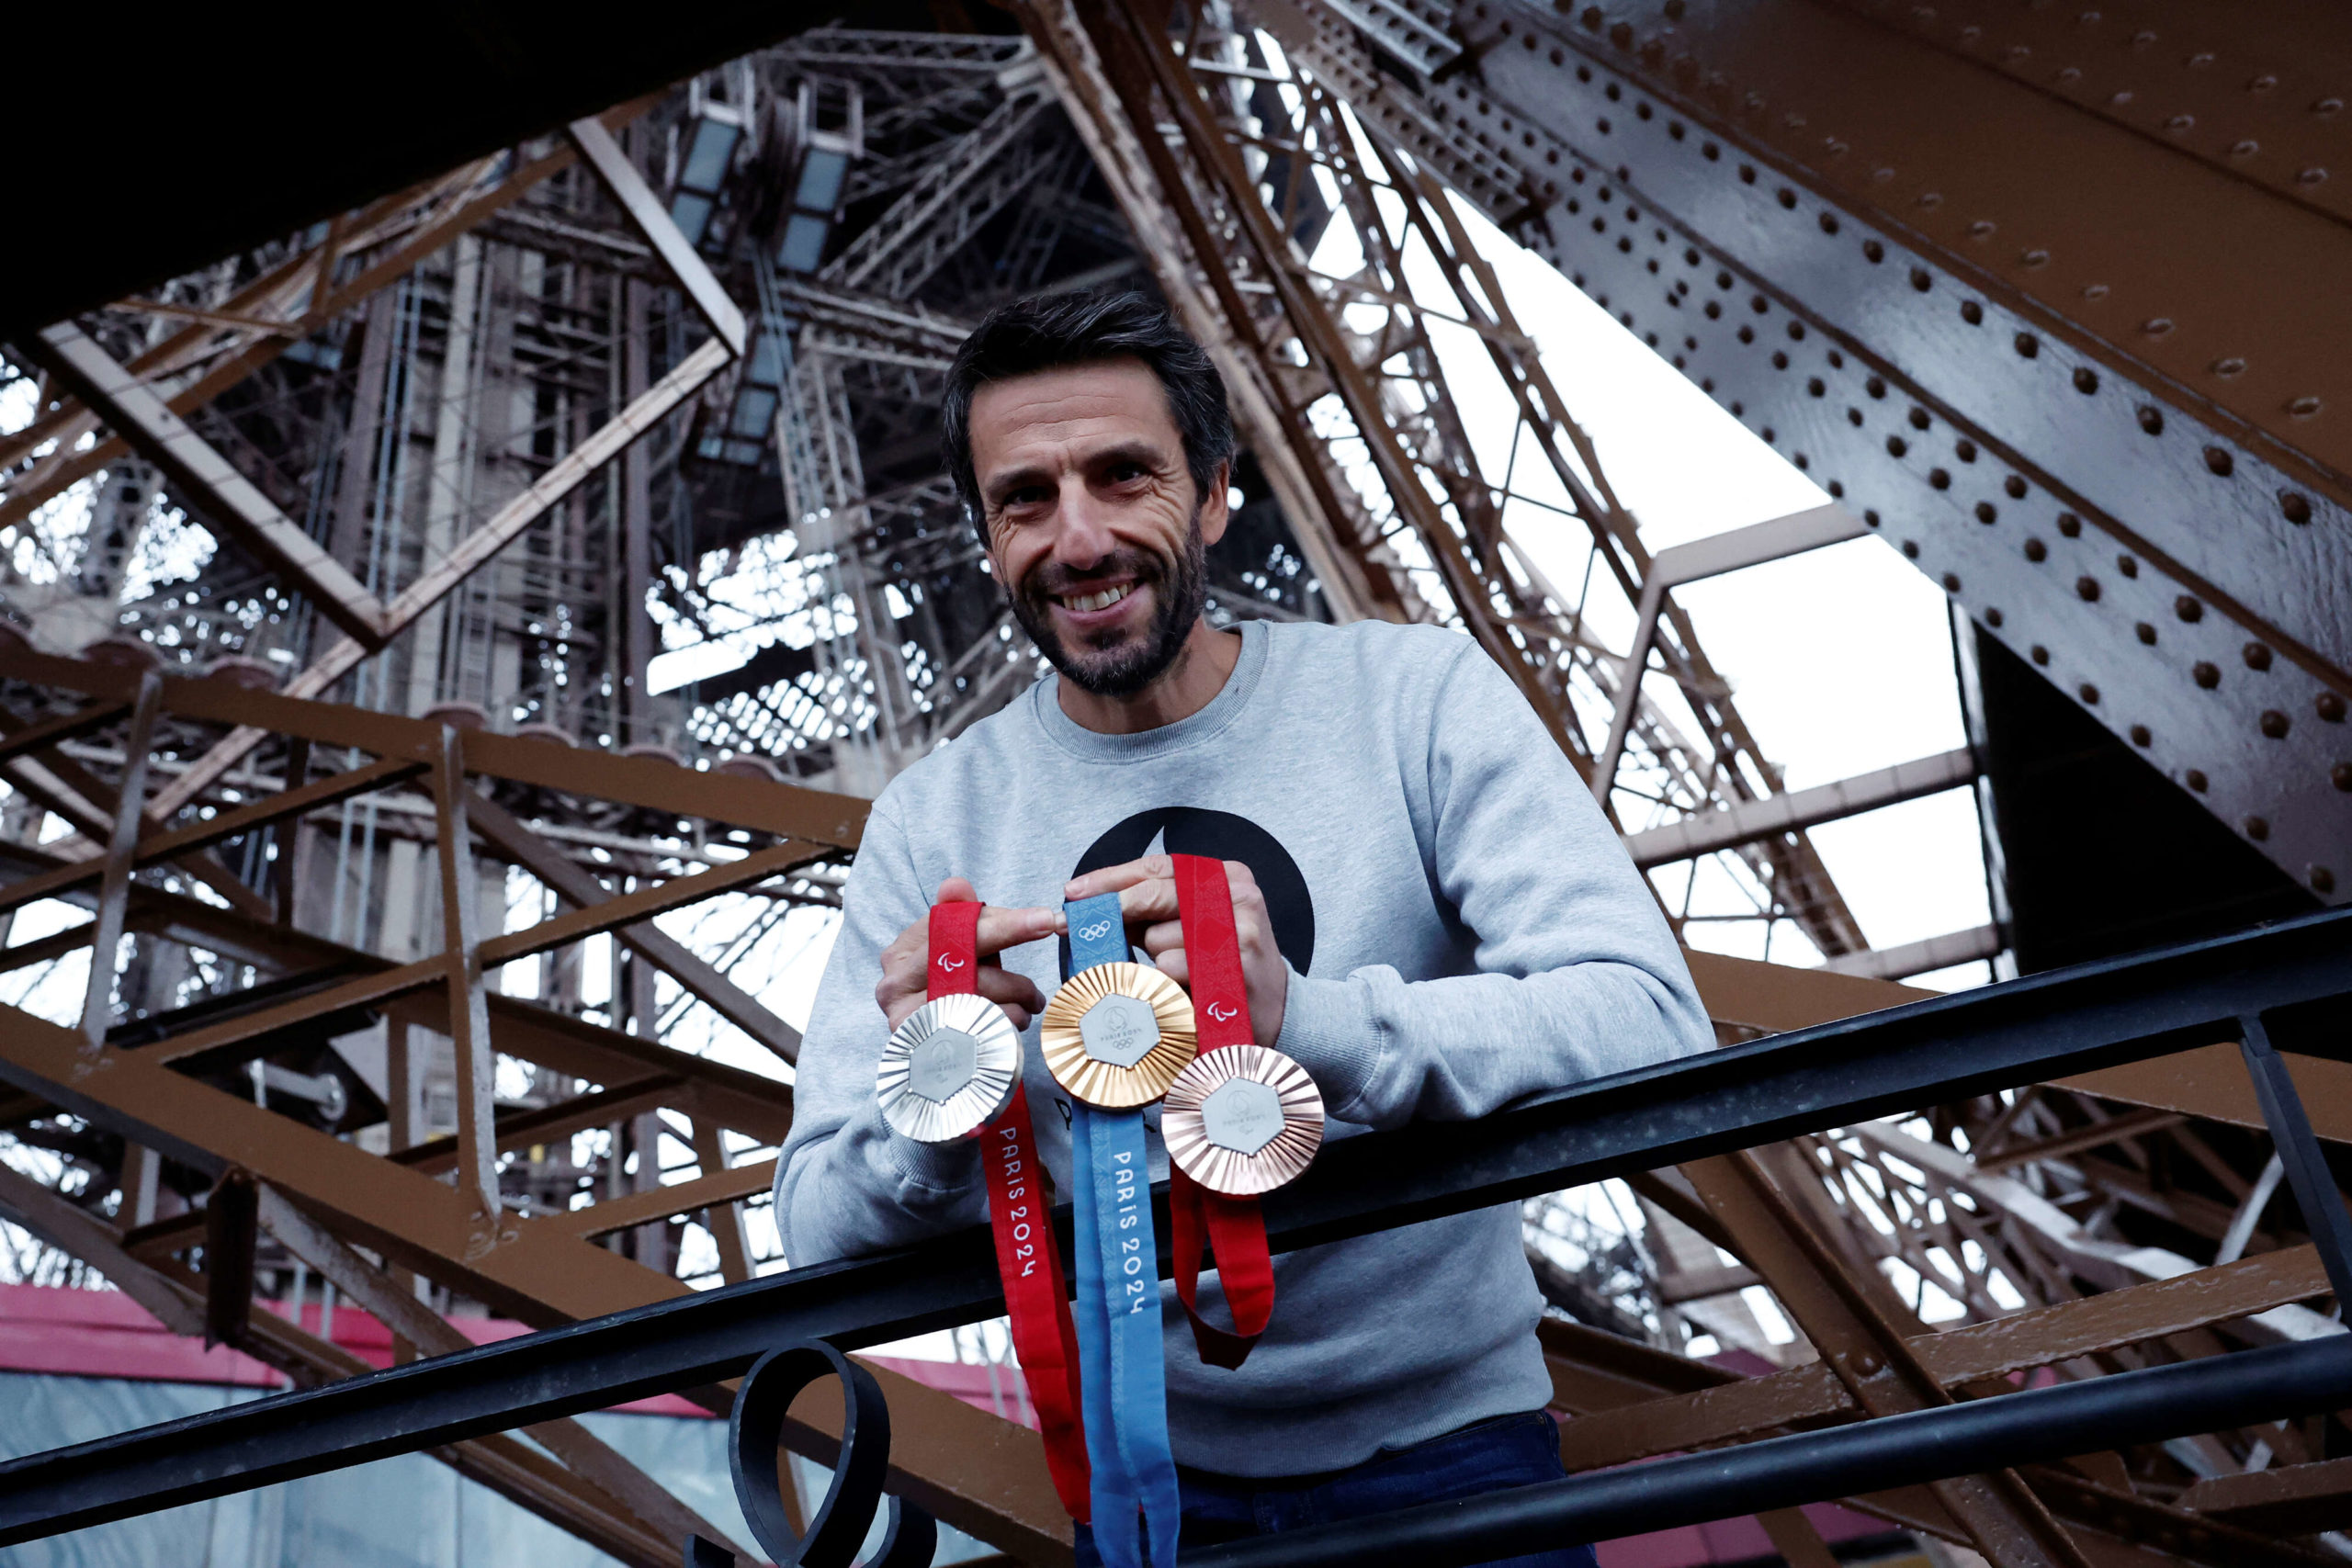 الميداليات التي ستمنح للفائزين في الألعاب الأولمبية والبارالمبية في باريس